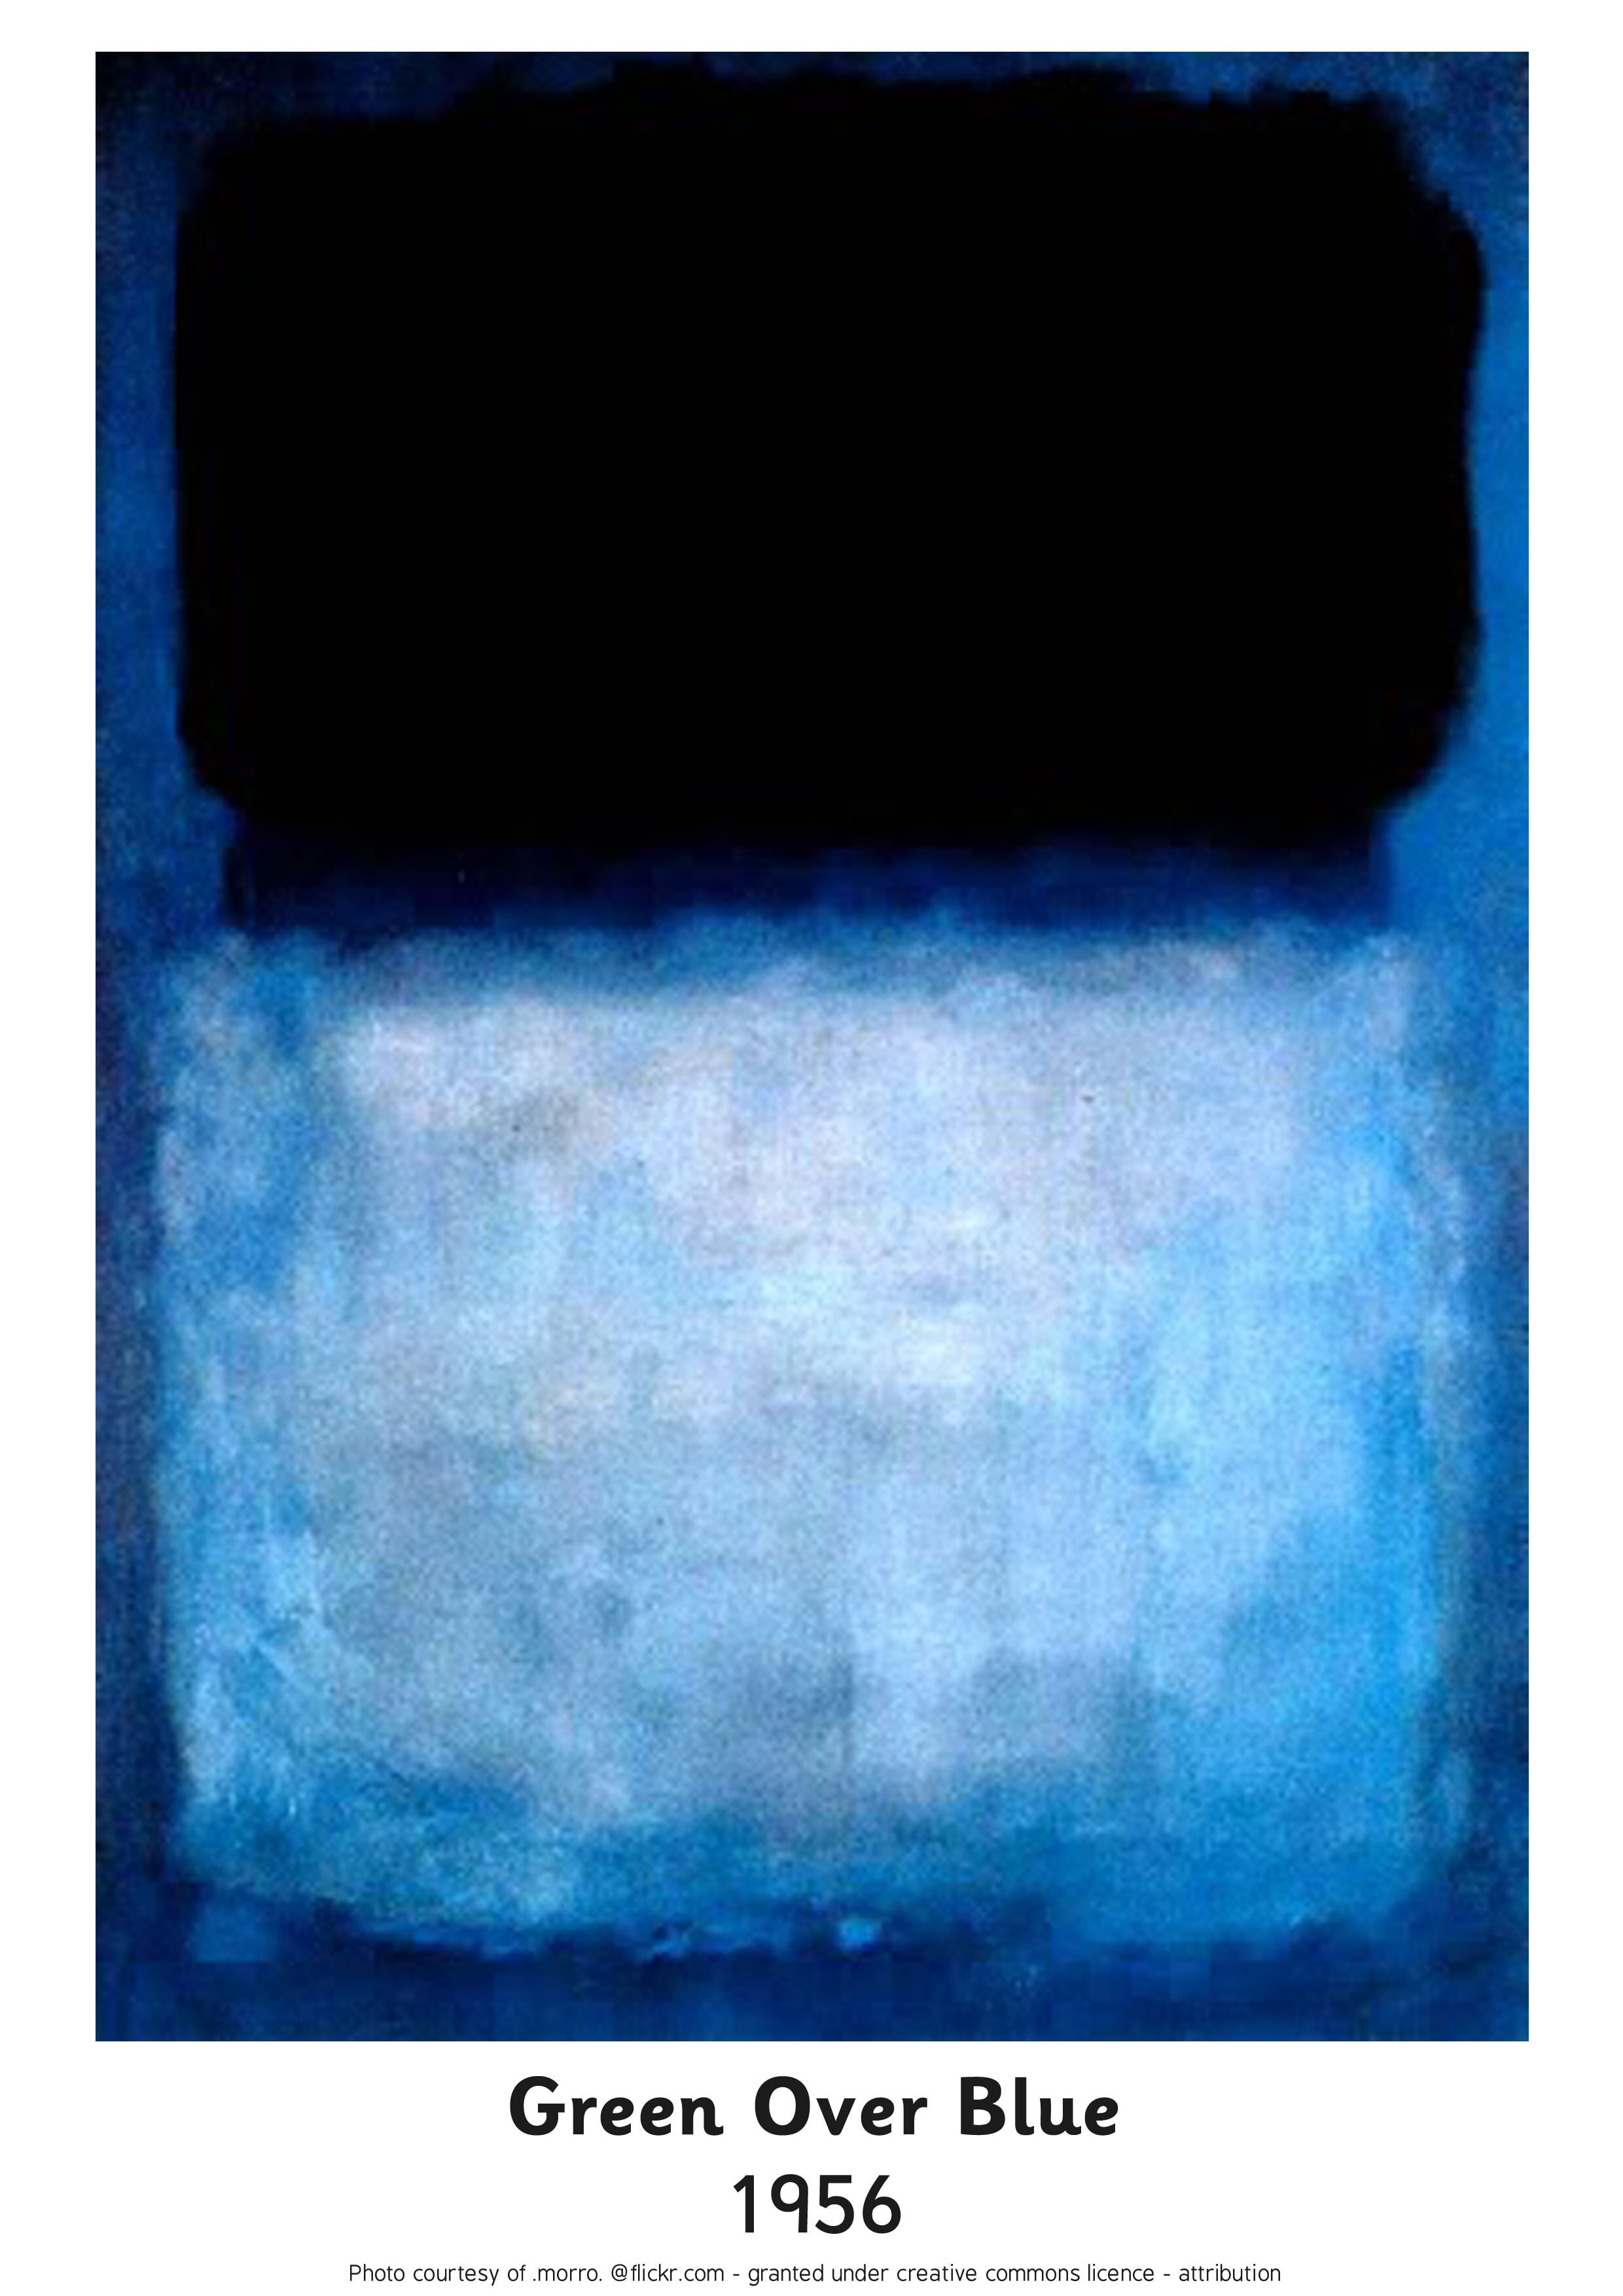 Mark Rothko, Green Over Blue, 1956